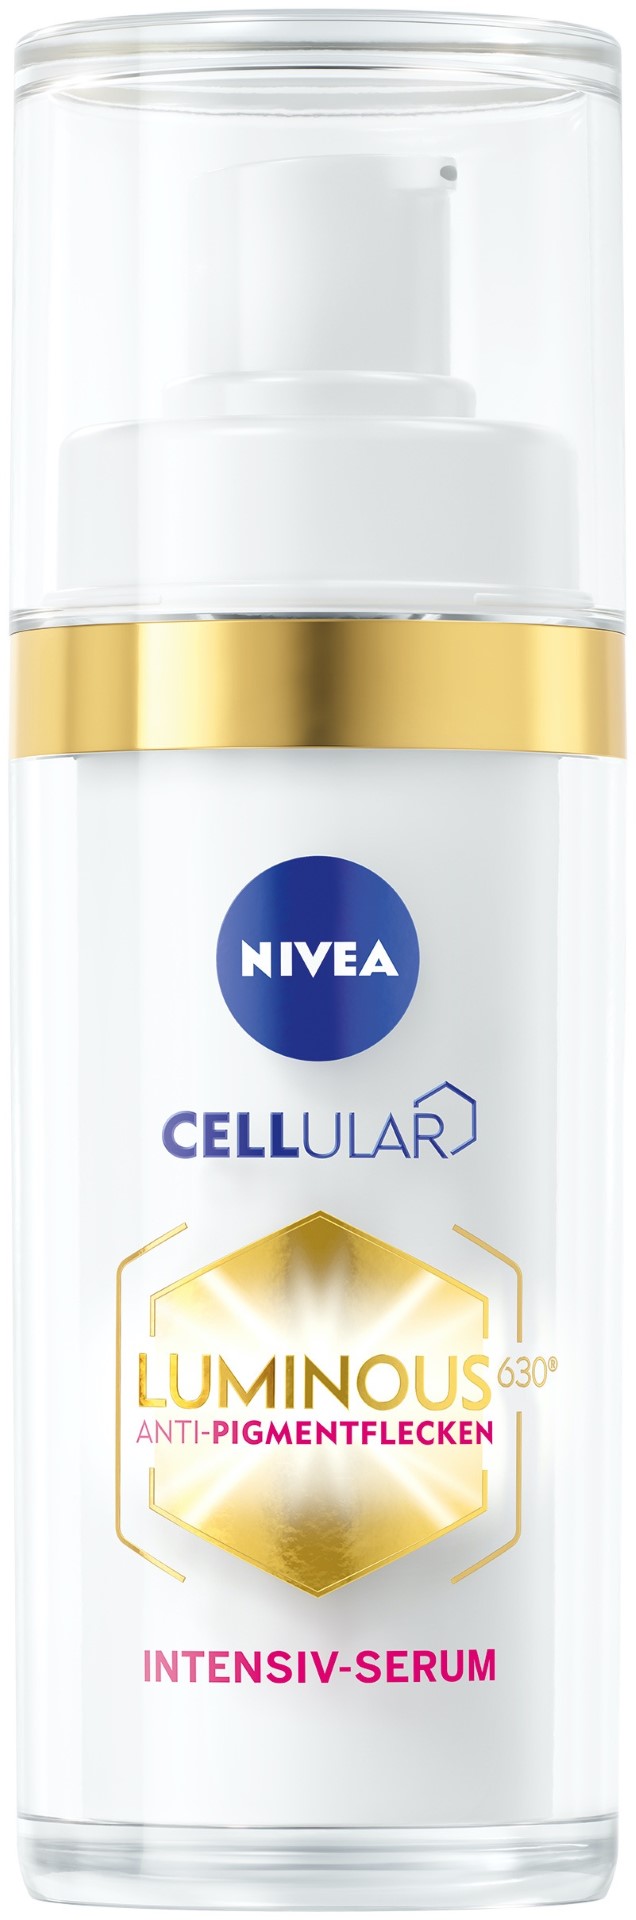 NIVEA Cellular LUMINOS 630®